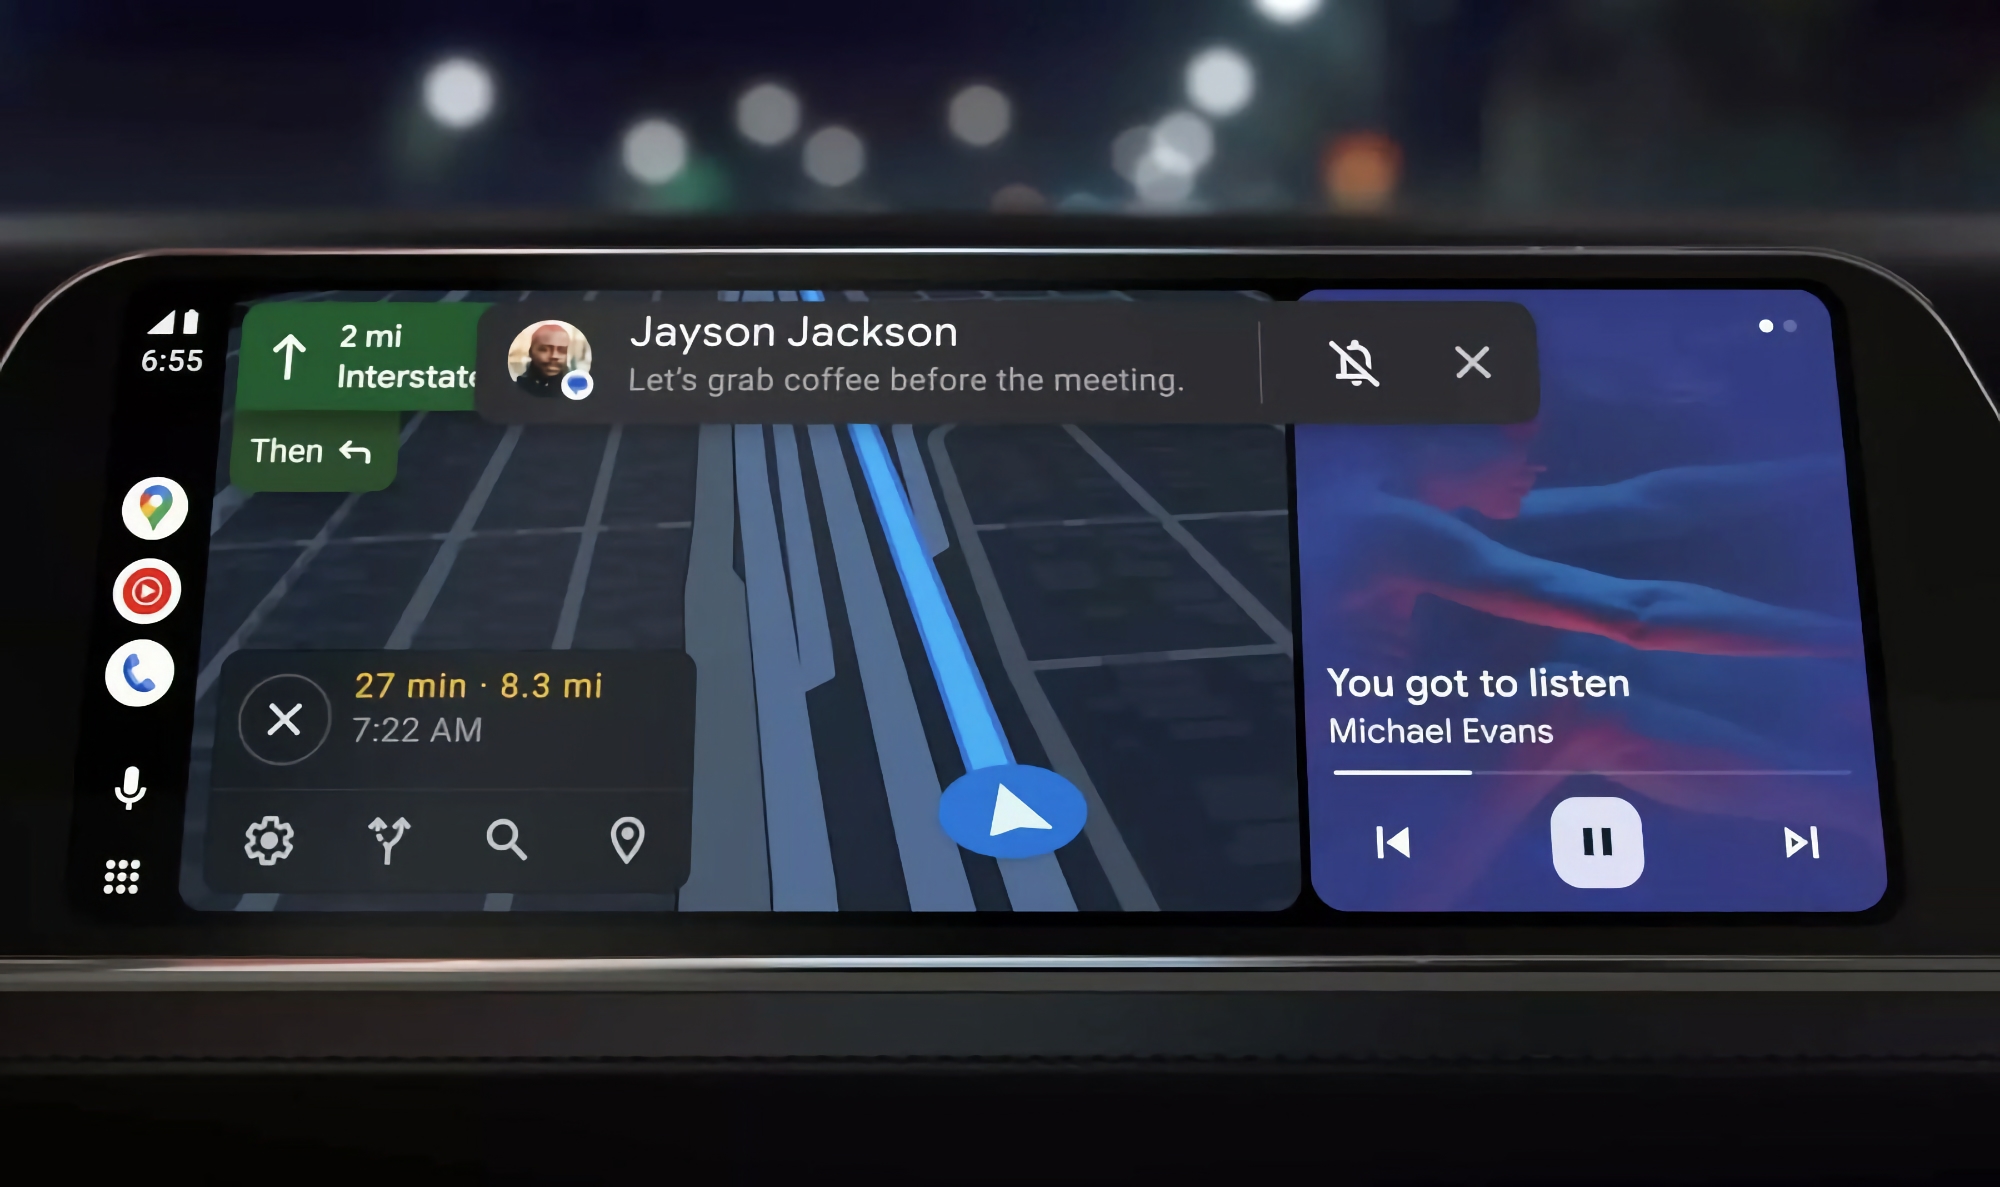 Asystent Google w Android Auto będzie mógł podsumowywać wiadomości za pomocą sztucznej inteligencji.